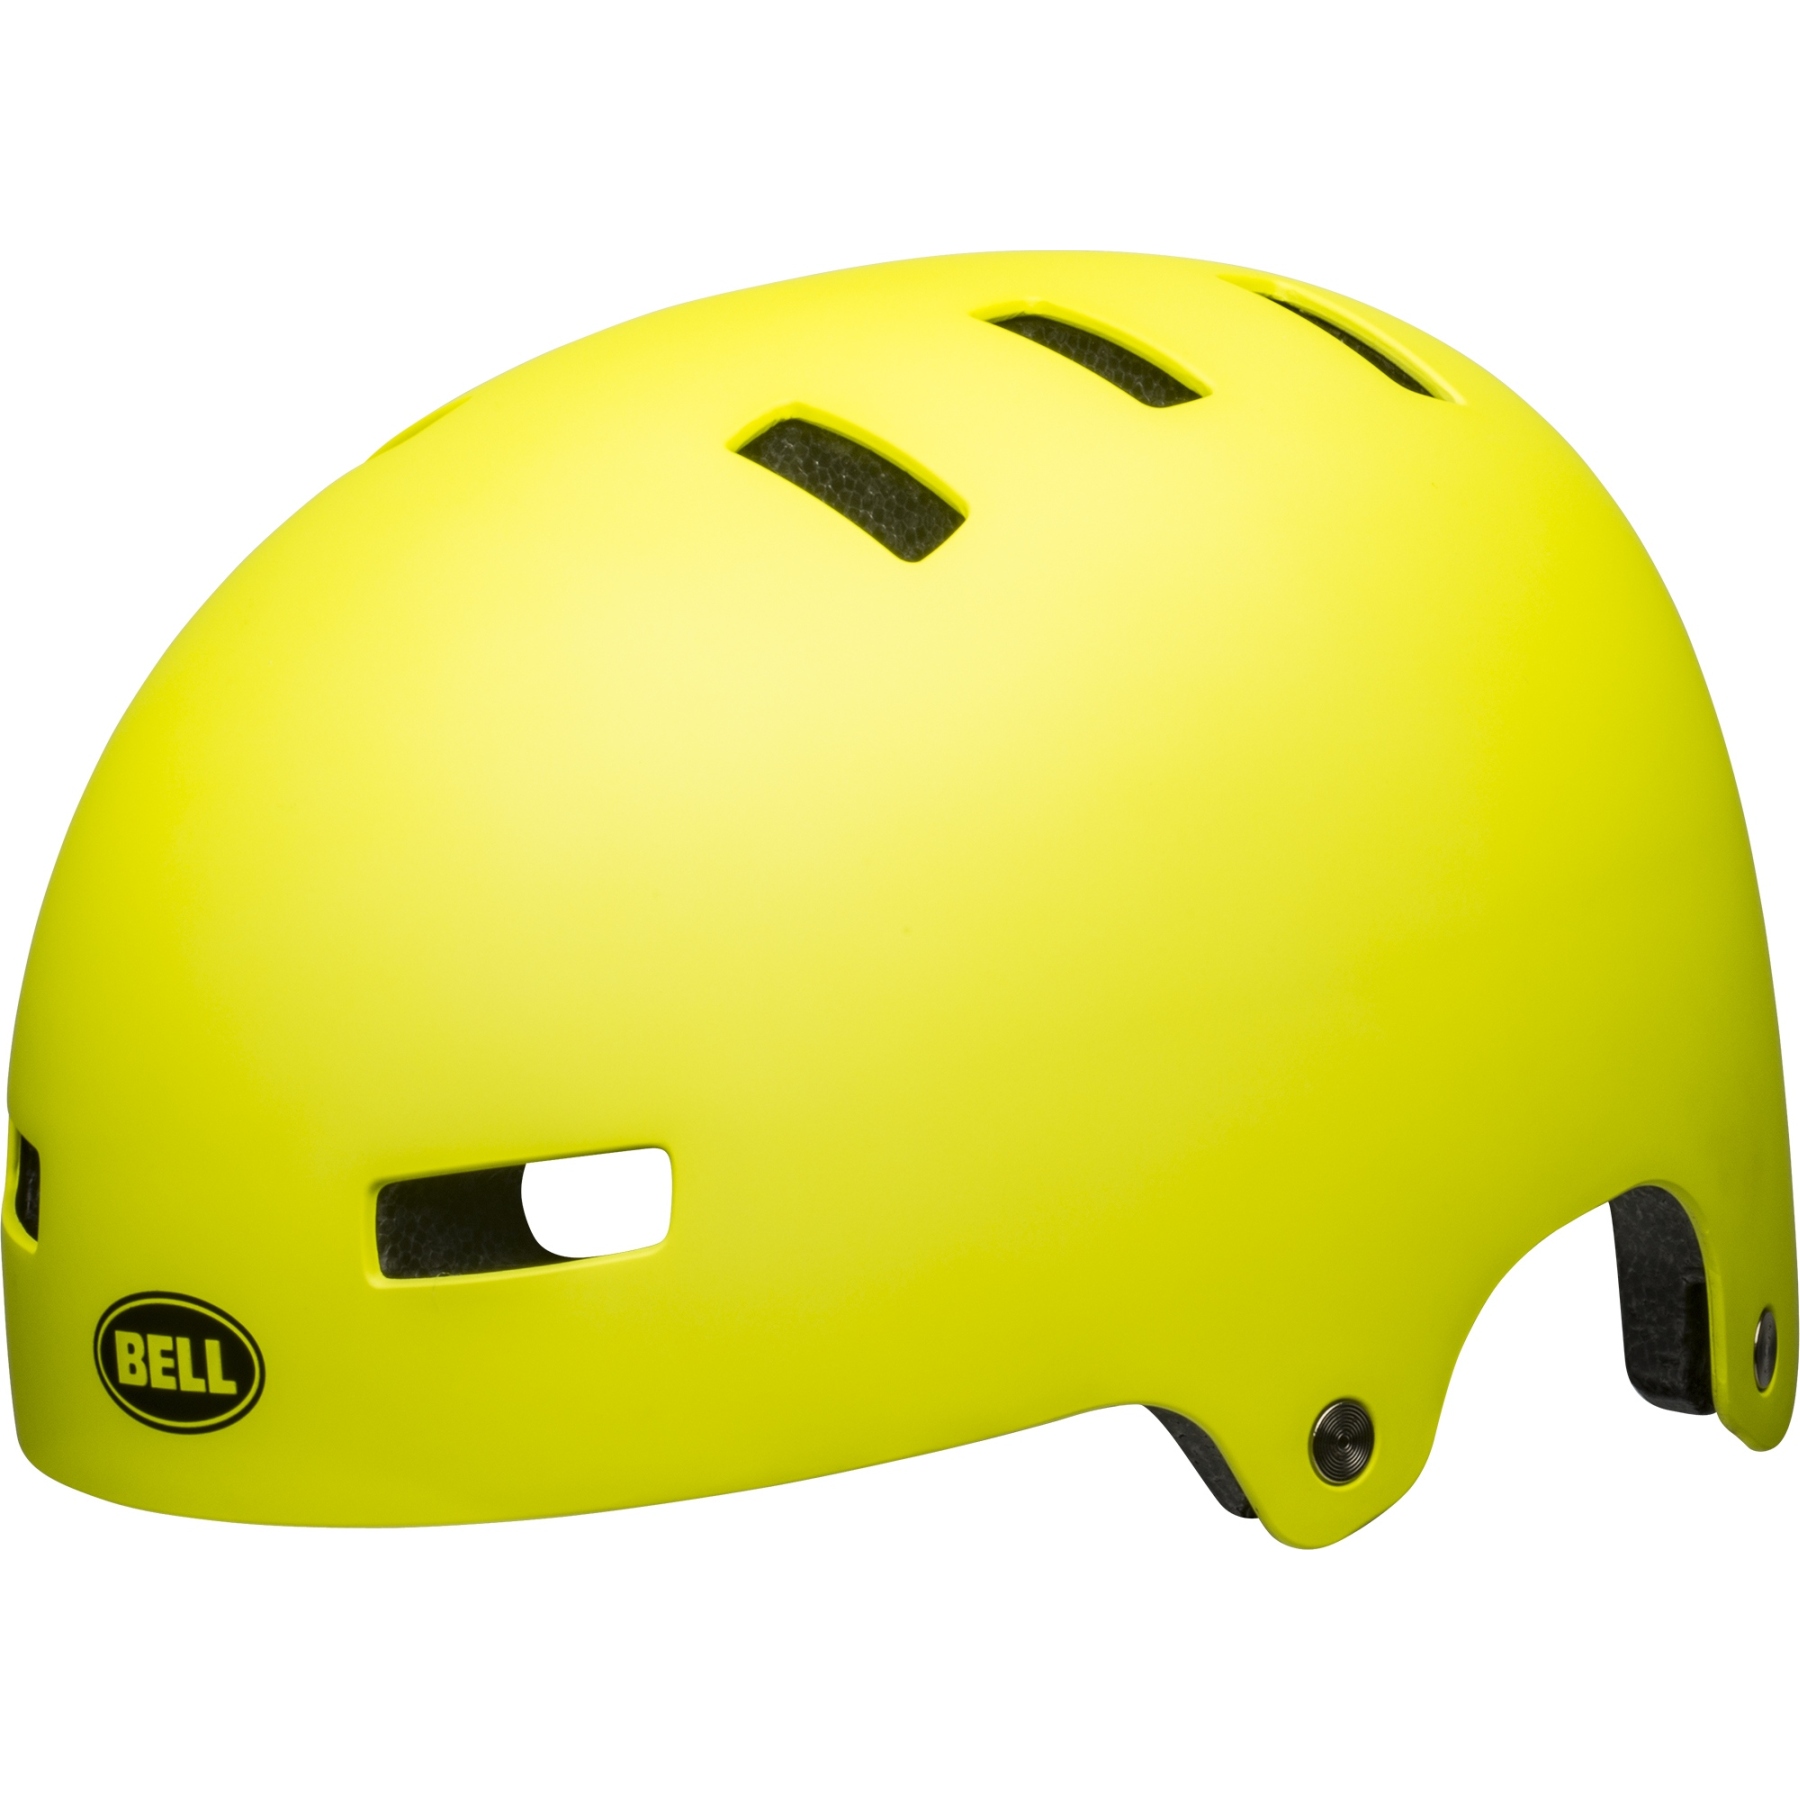 Productfoto van Bell Local Helm - matte hi-viz